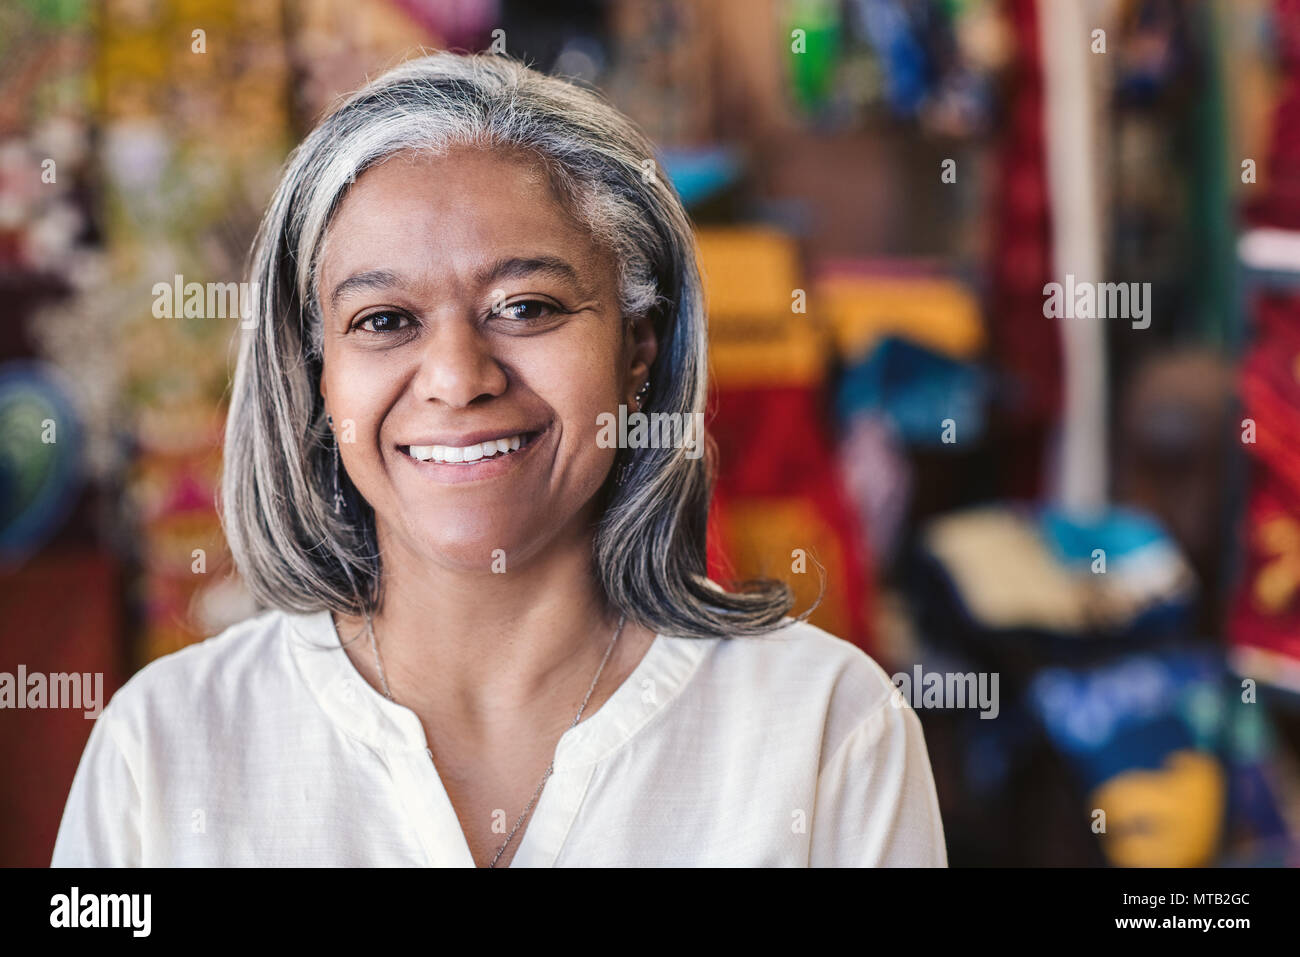 Ritratto di un sorridente tessuto maturo il proprietario del negozio in piedi nel suo negozio con colorati tessuti e prodotti tessili su scaffali in background Foto Stock